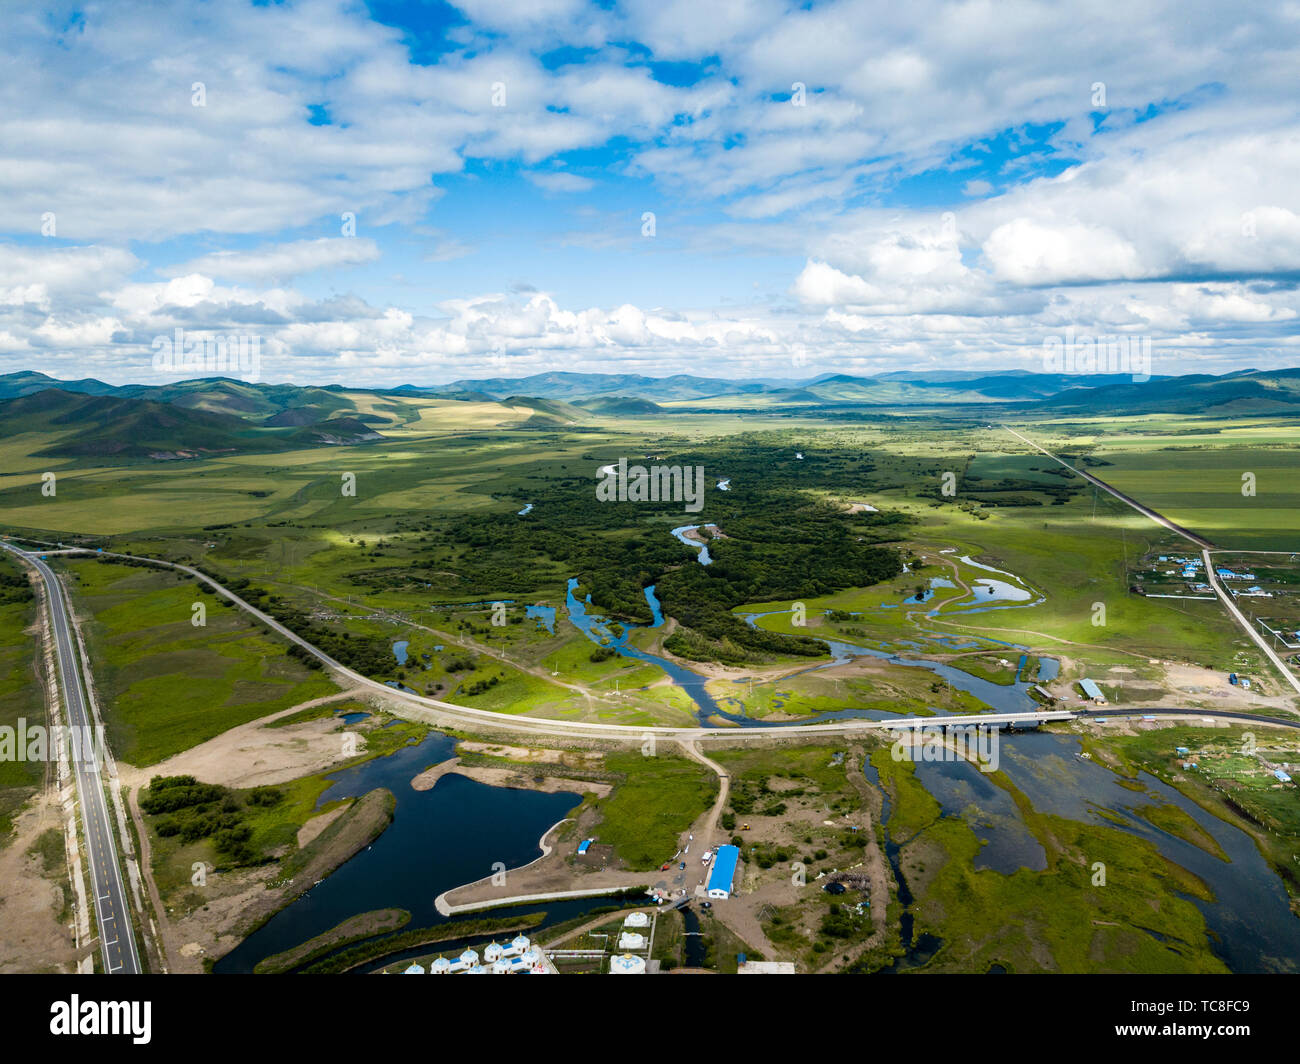 Photographie aérienne de beau paysage le long de la voie à Hulunbuir, Mongolie Intérieure Banque D'Images